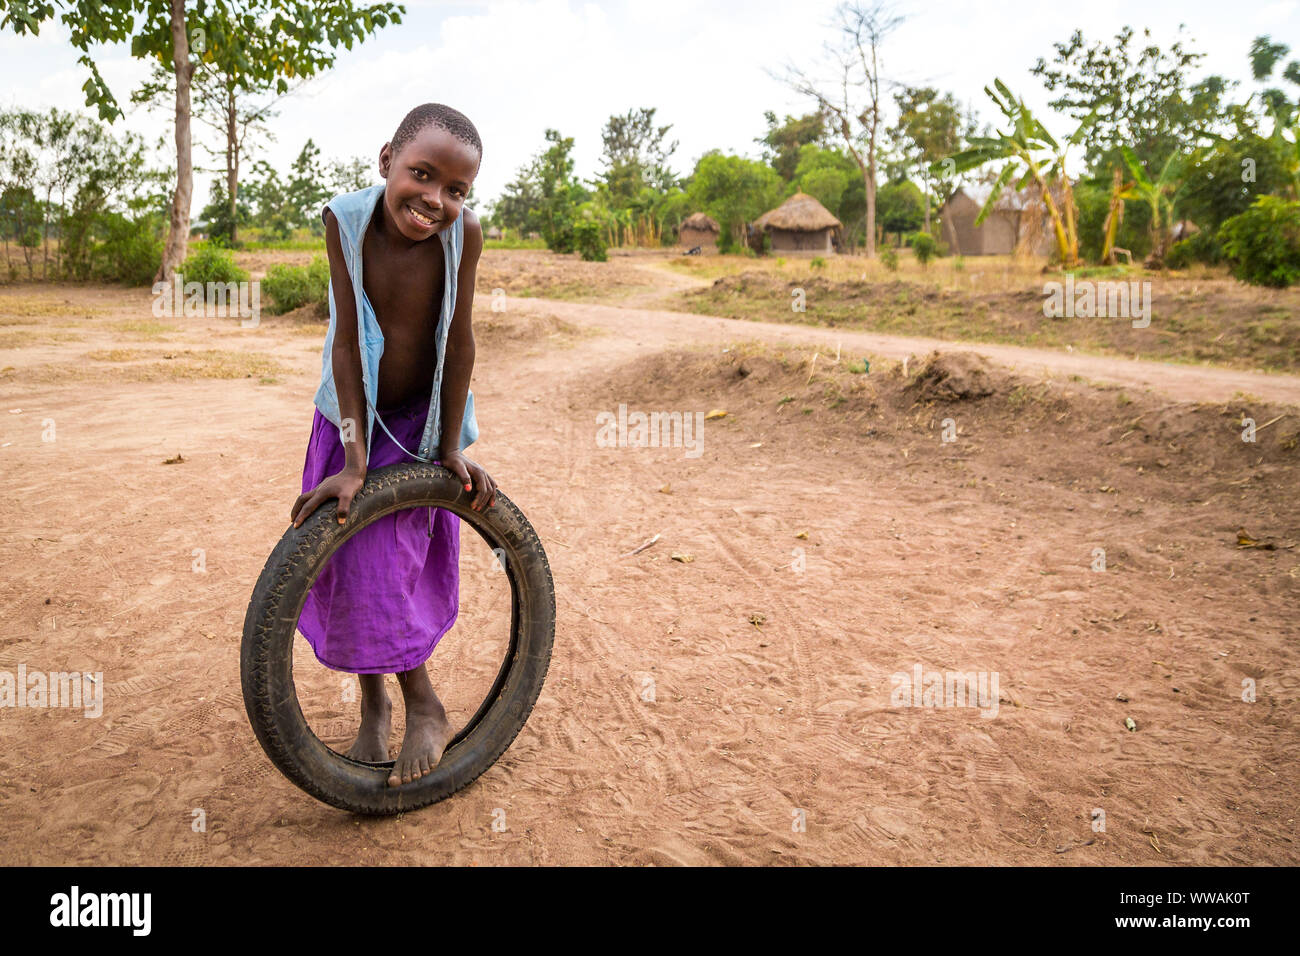 Portrait d'une jeune fille dans un village de jouer avec une jupe mauve, des pneus, du district de Tororo Ouganda Banque D'Images